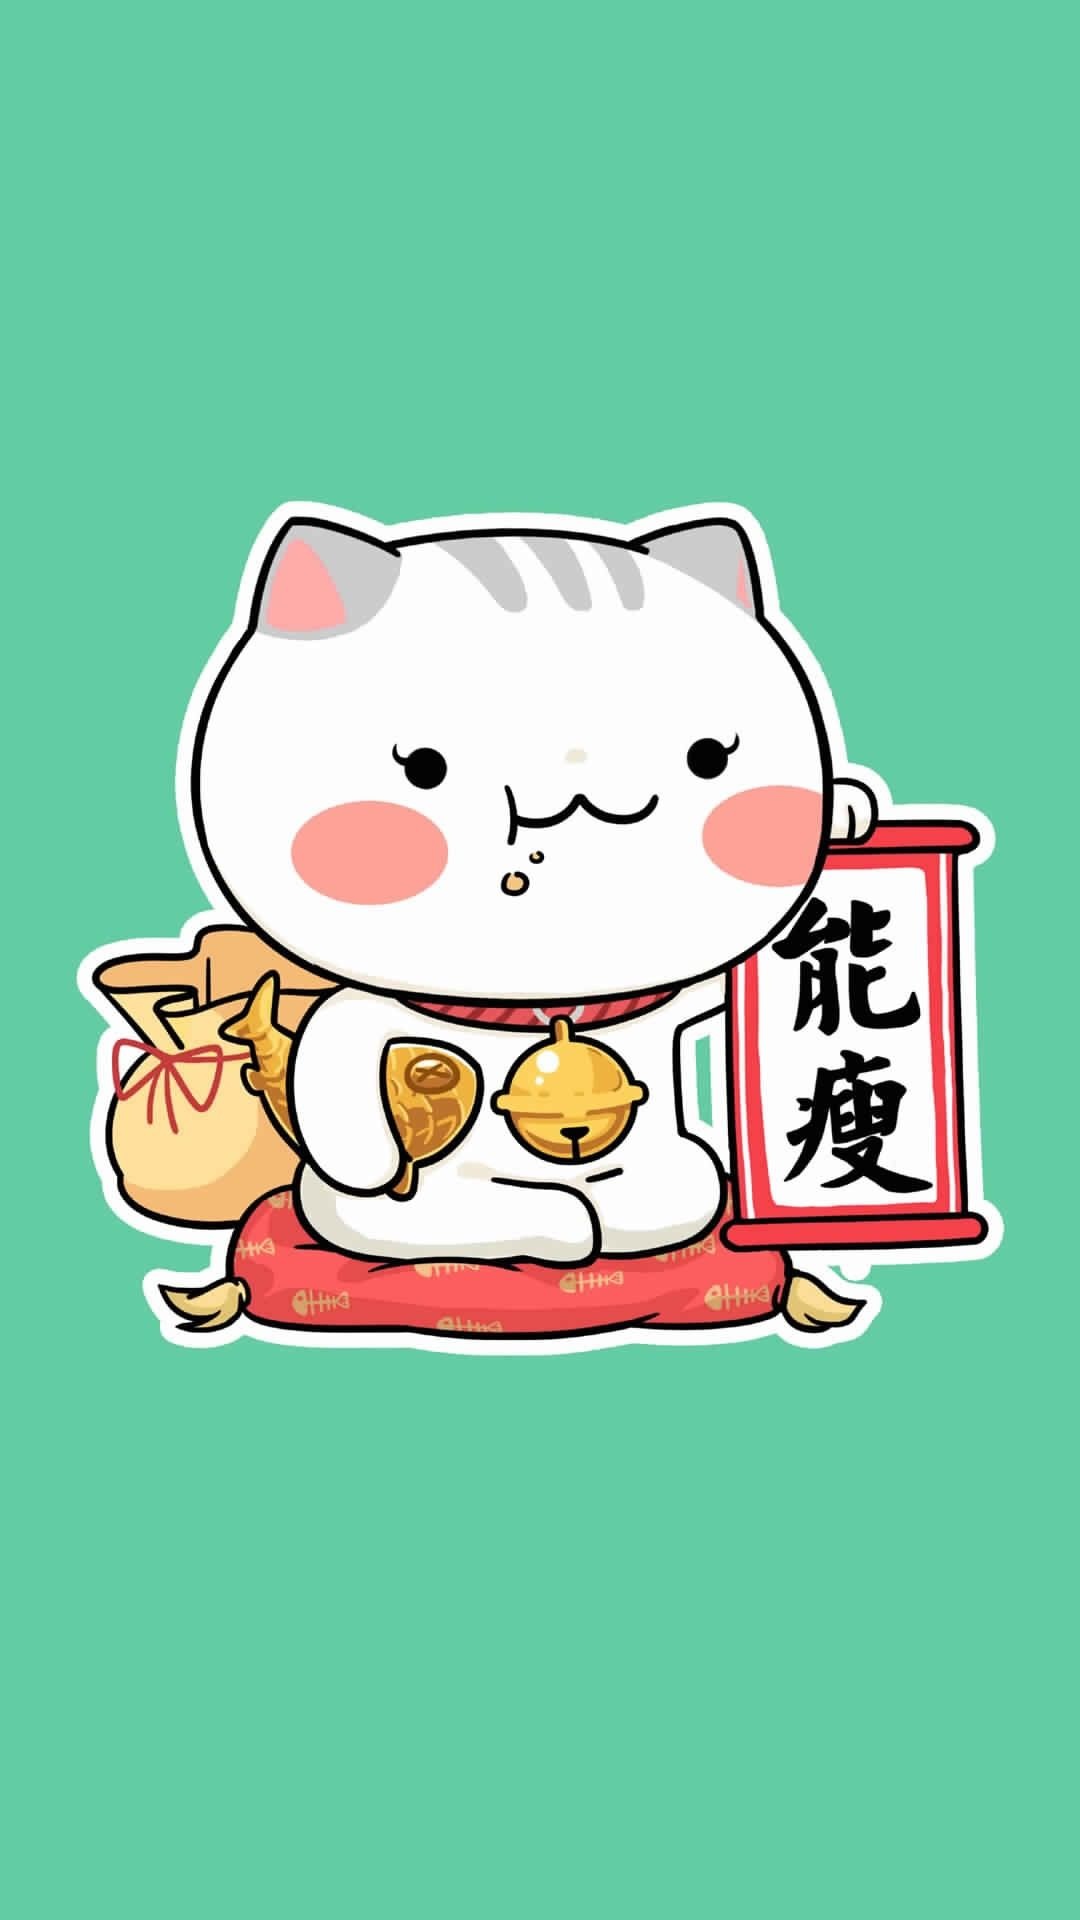 Japanese Lucky Cat, Maneki neko ideas, Good luck, Fortune cat, 1080x1920 Full HD Handy